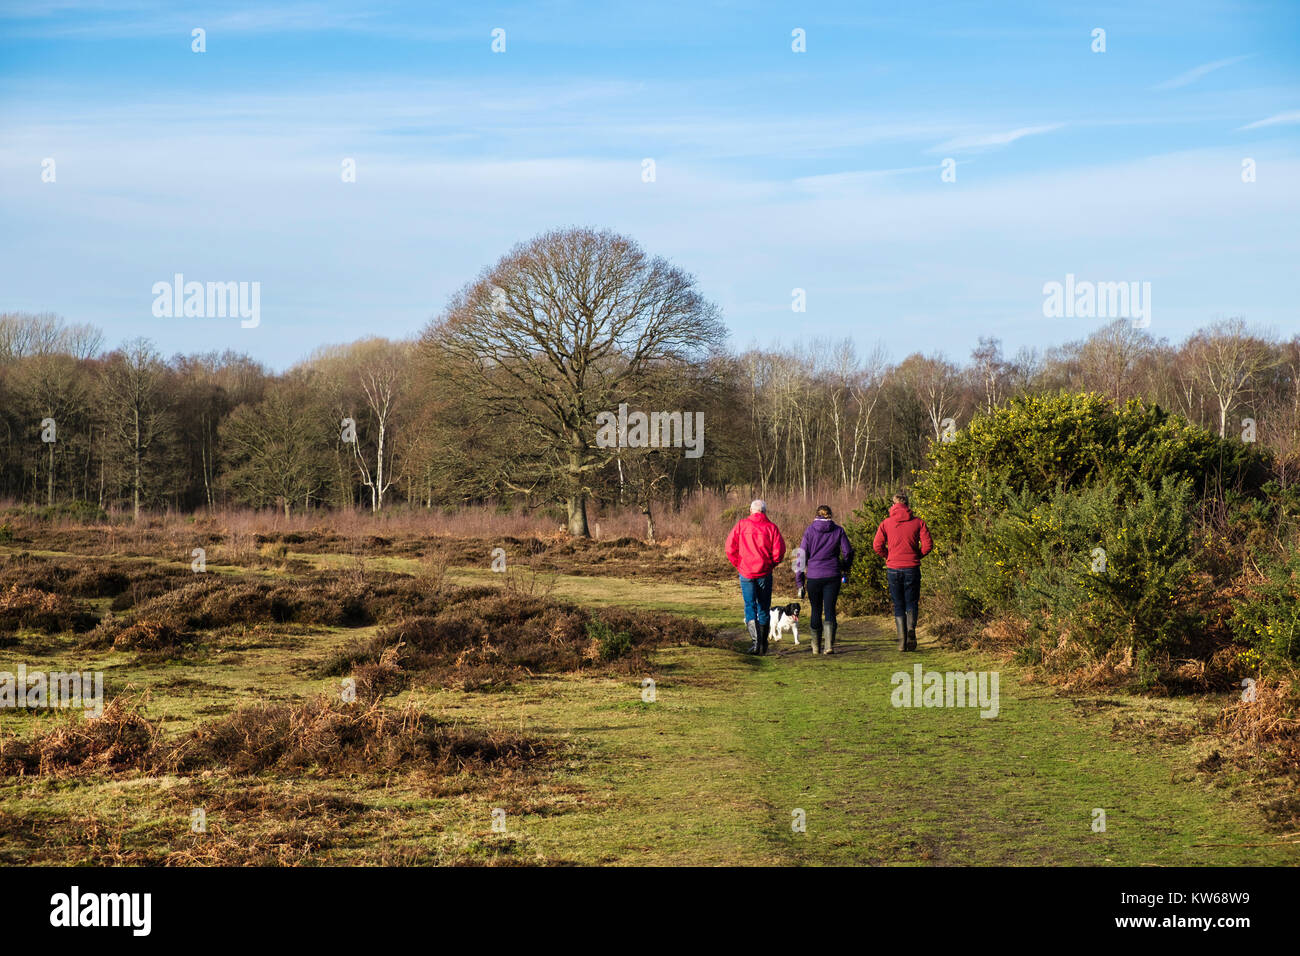 Die Menschen auf dem Land spazieren gehen mit einem Hund auf Heide in Kent Wildlife Trust Nature Reserve. Hothfield Heathlands Ashford Kent England Großbritannien Großbritannien Stockfoto